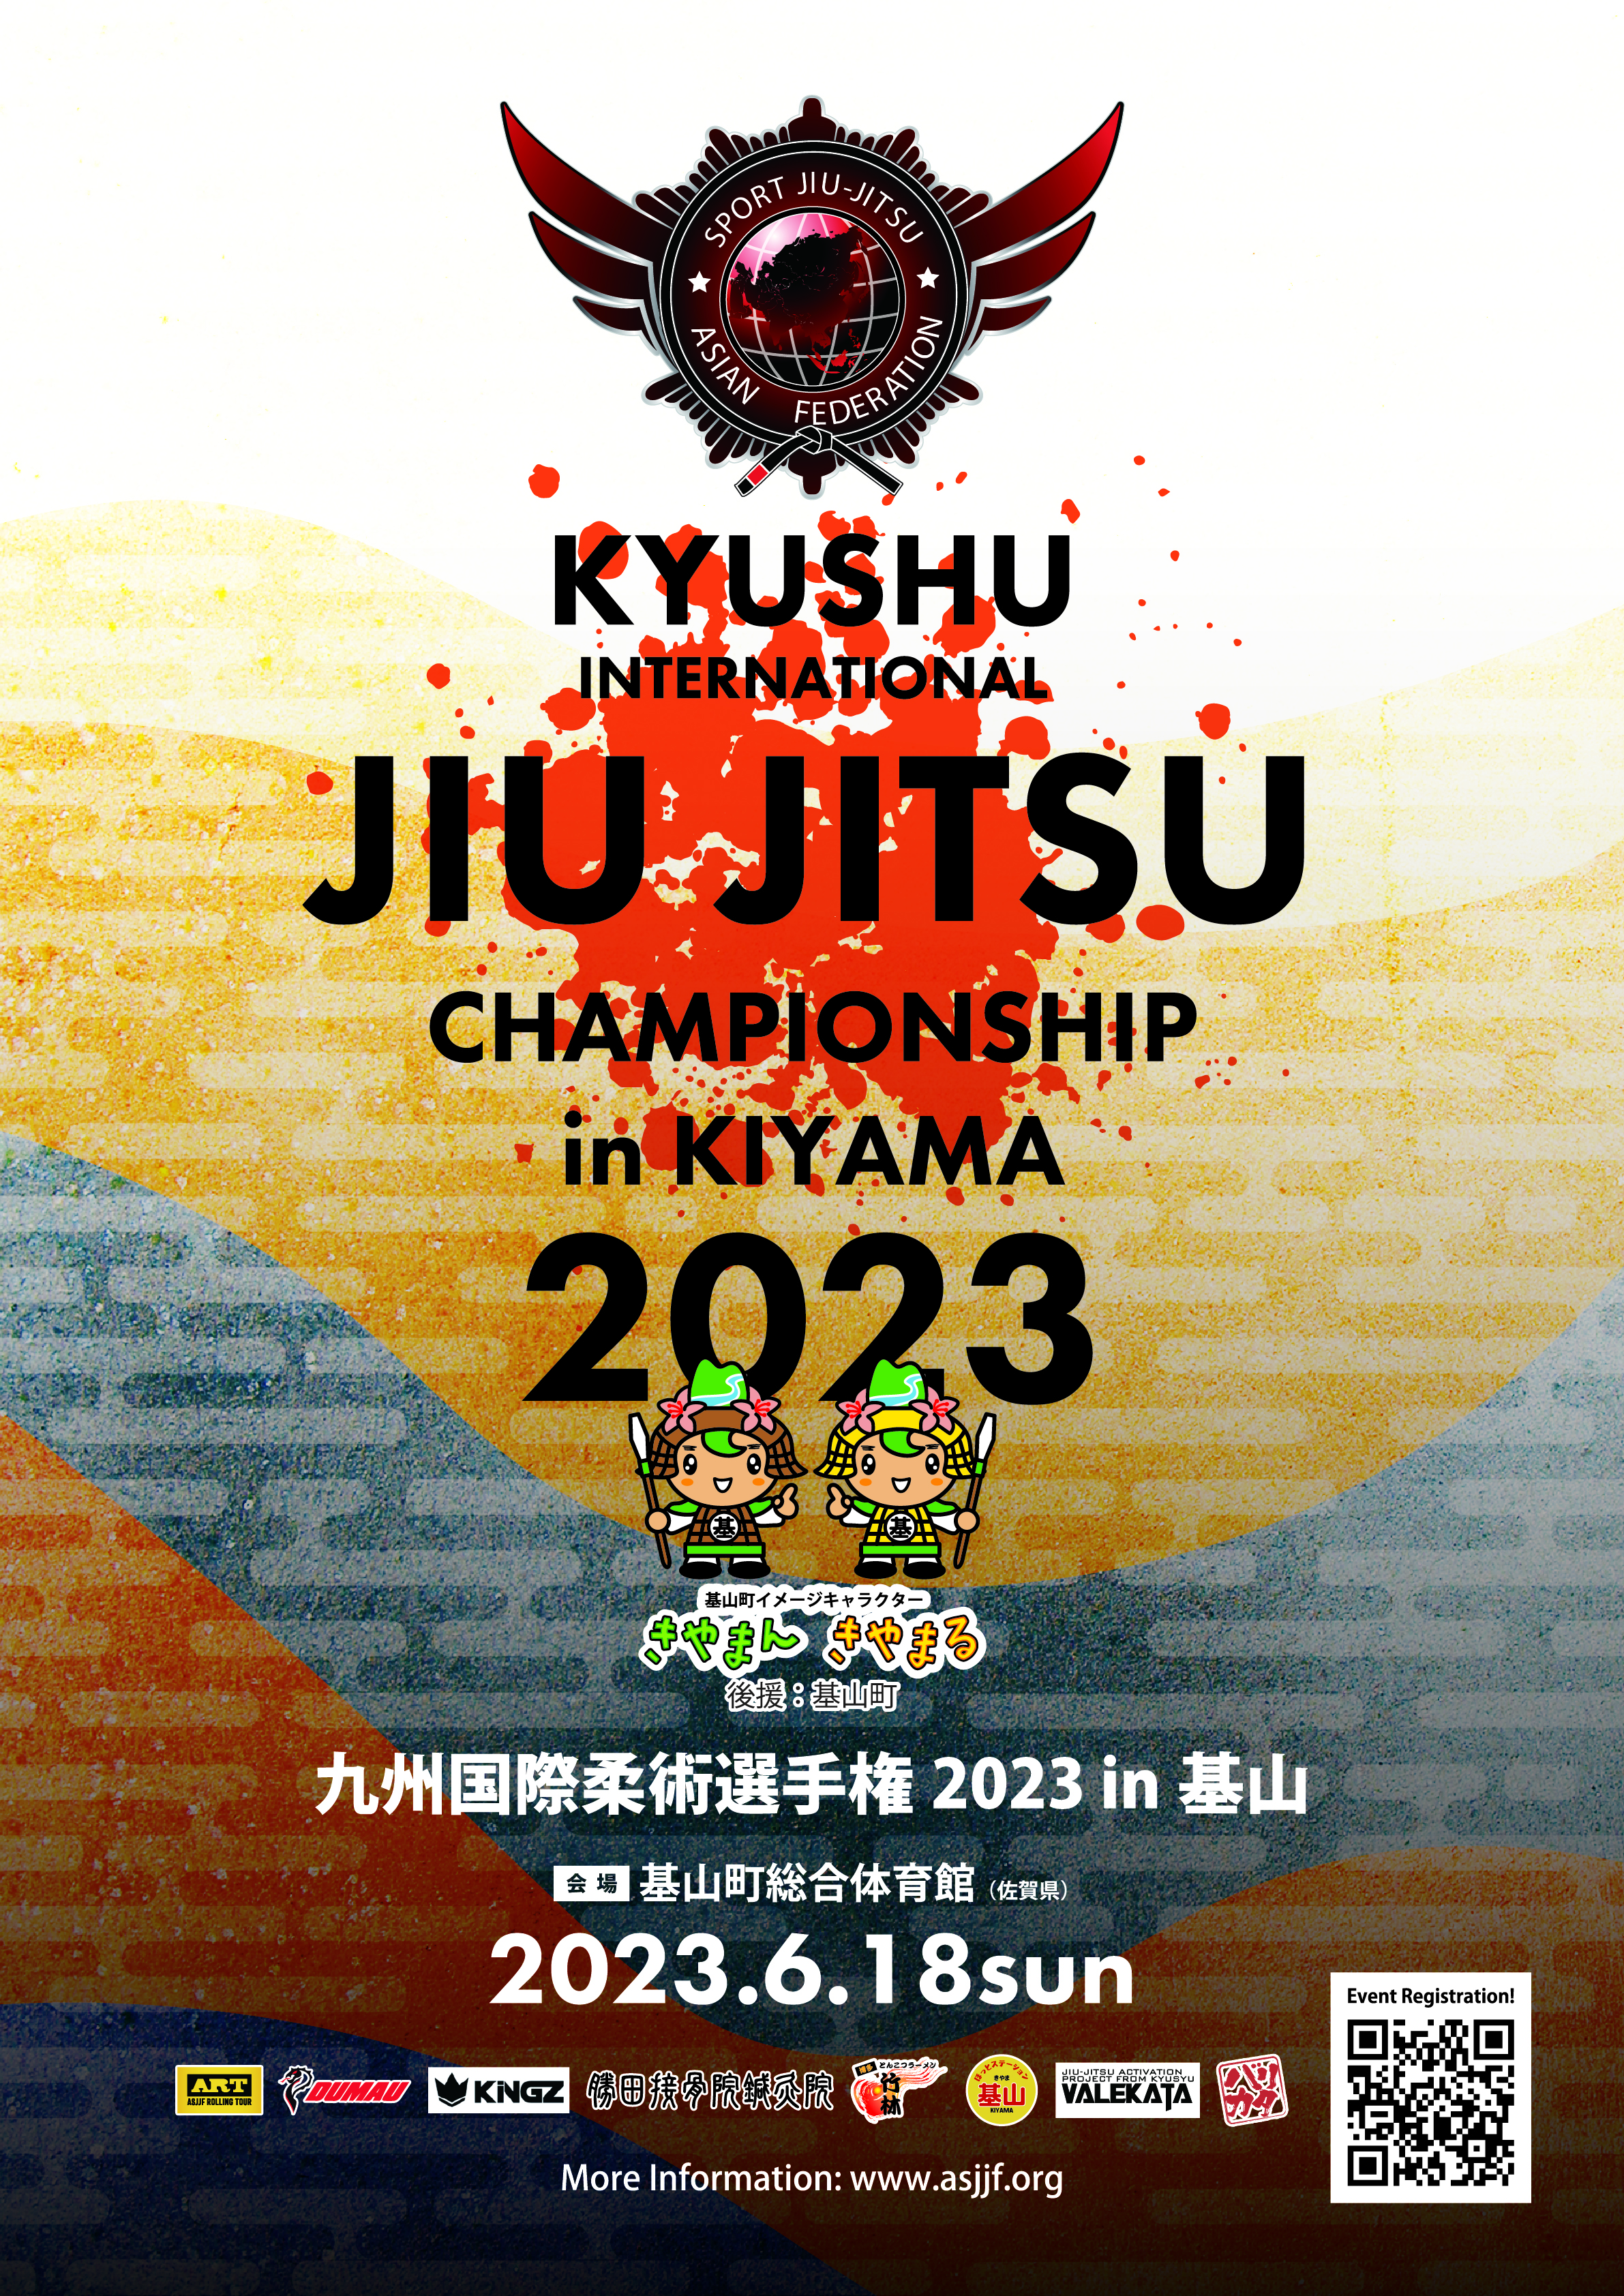 Kyushu International Jiu Jitsu Championship 2023